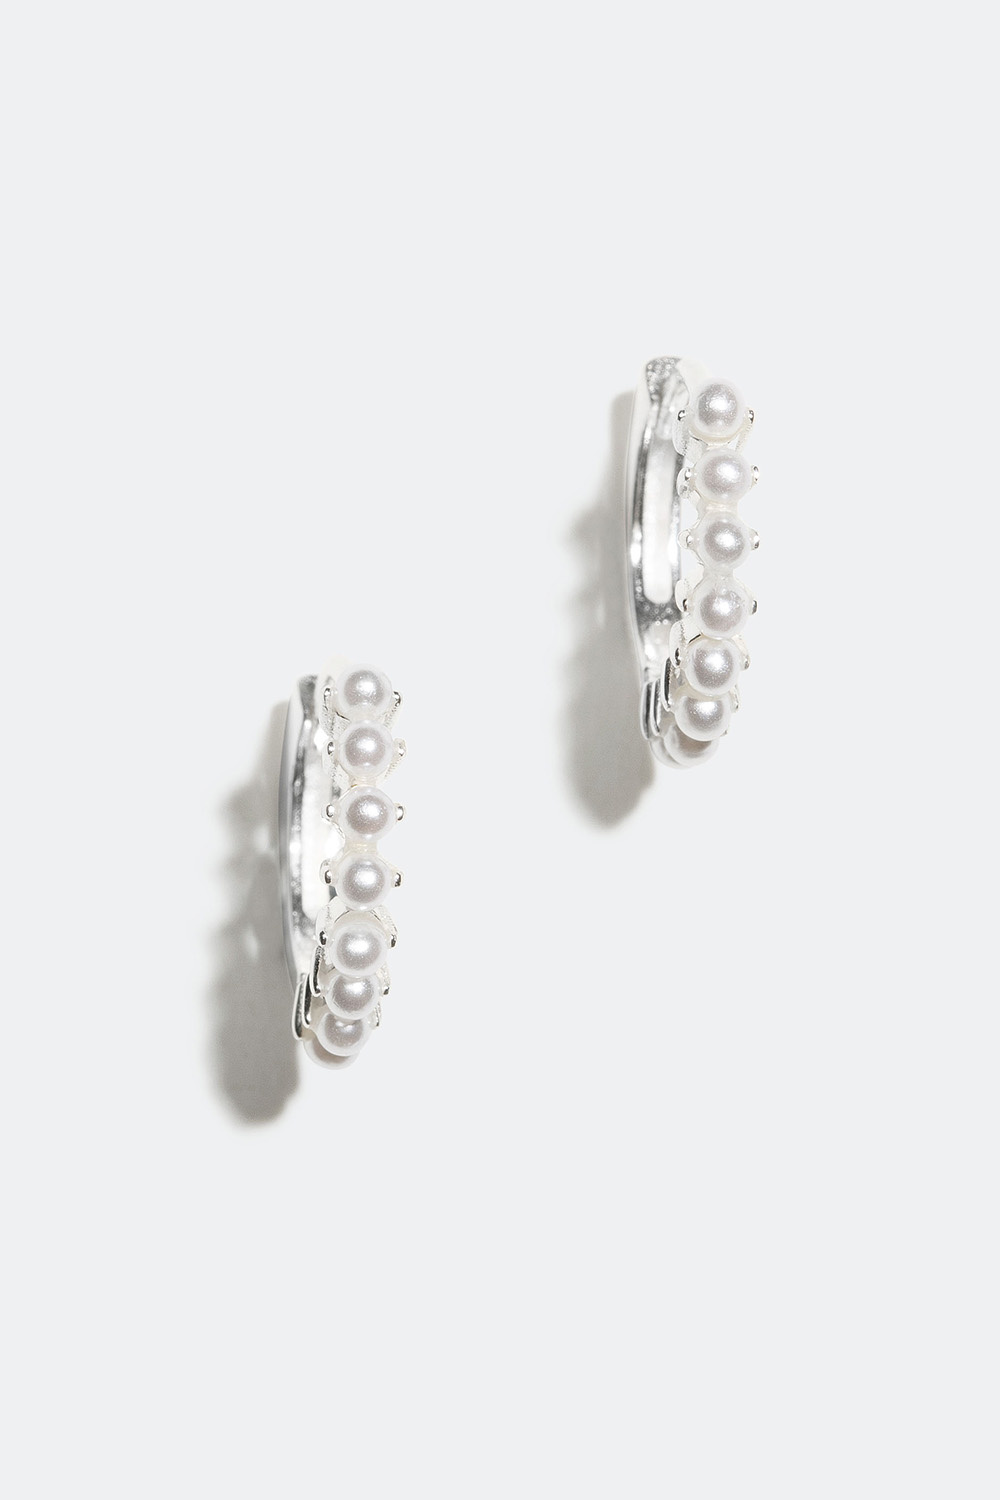 Små øreringer i ekte sølv med perler